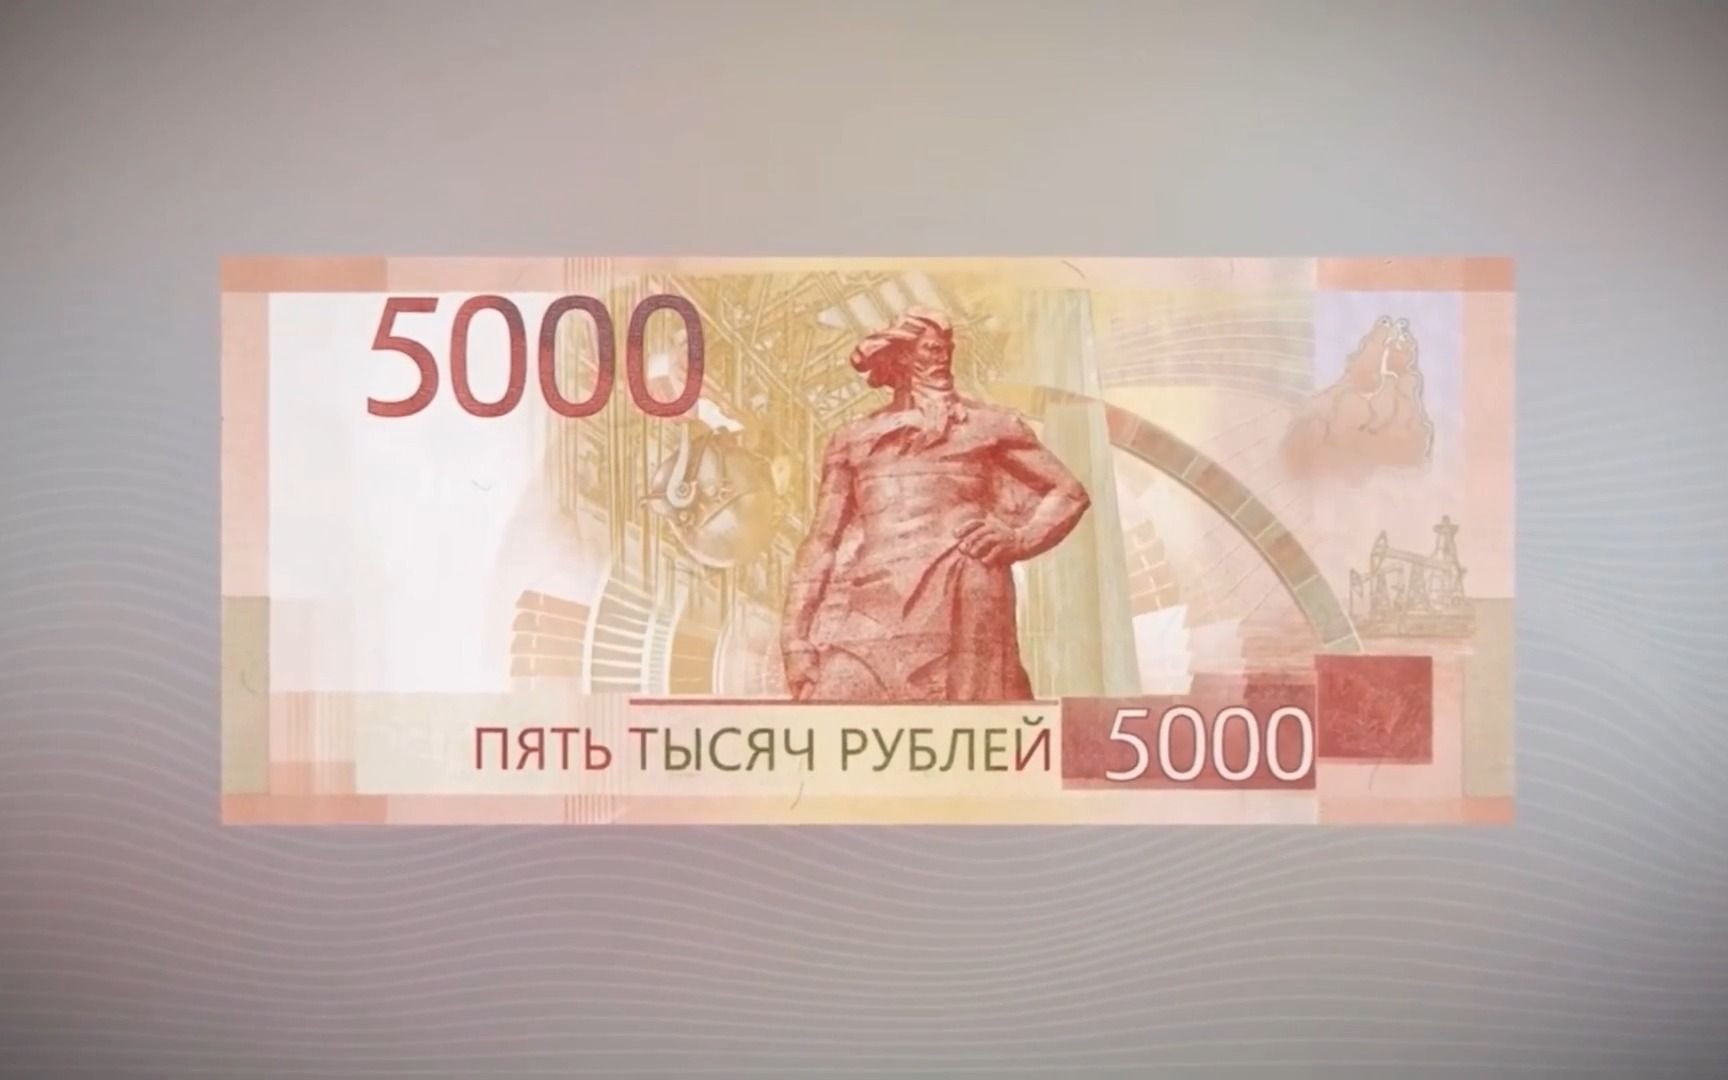 俄罗斯货币图片1000图片